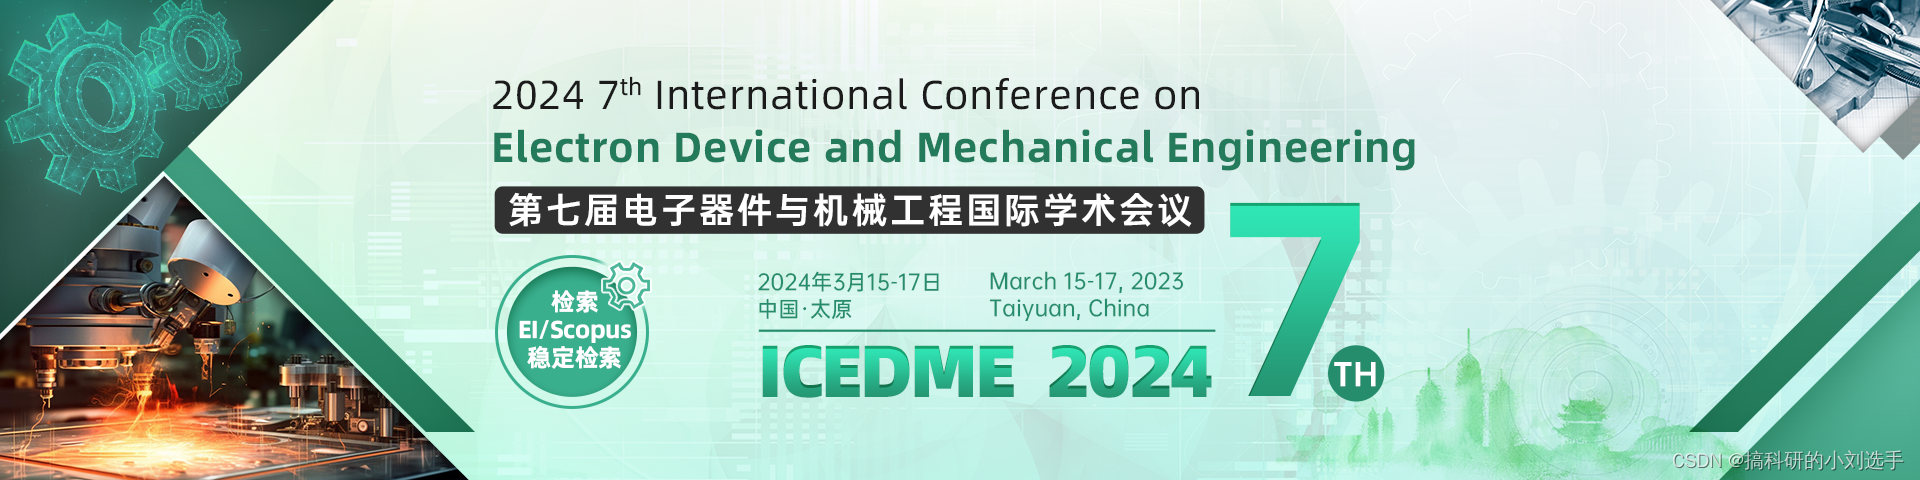 【EI会议征稿】第七届电子器件与机械工程国际学术会议（ICEDME 2024）